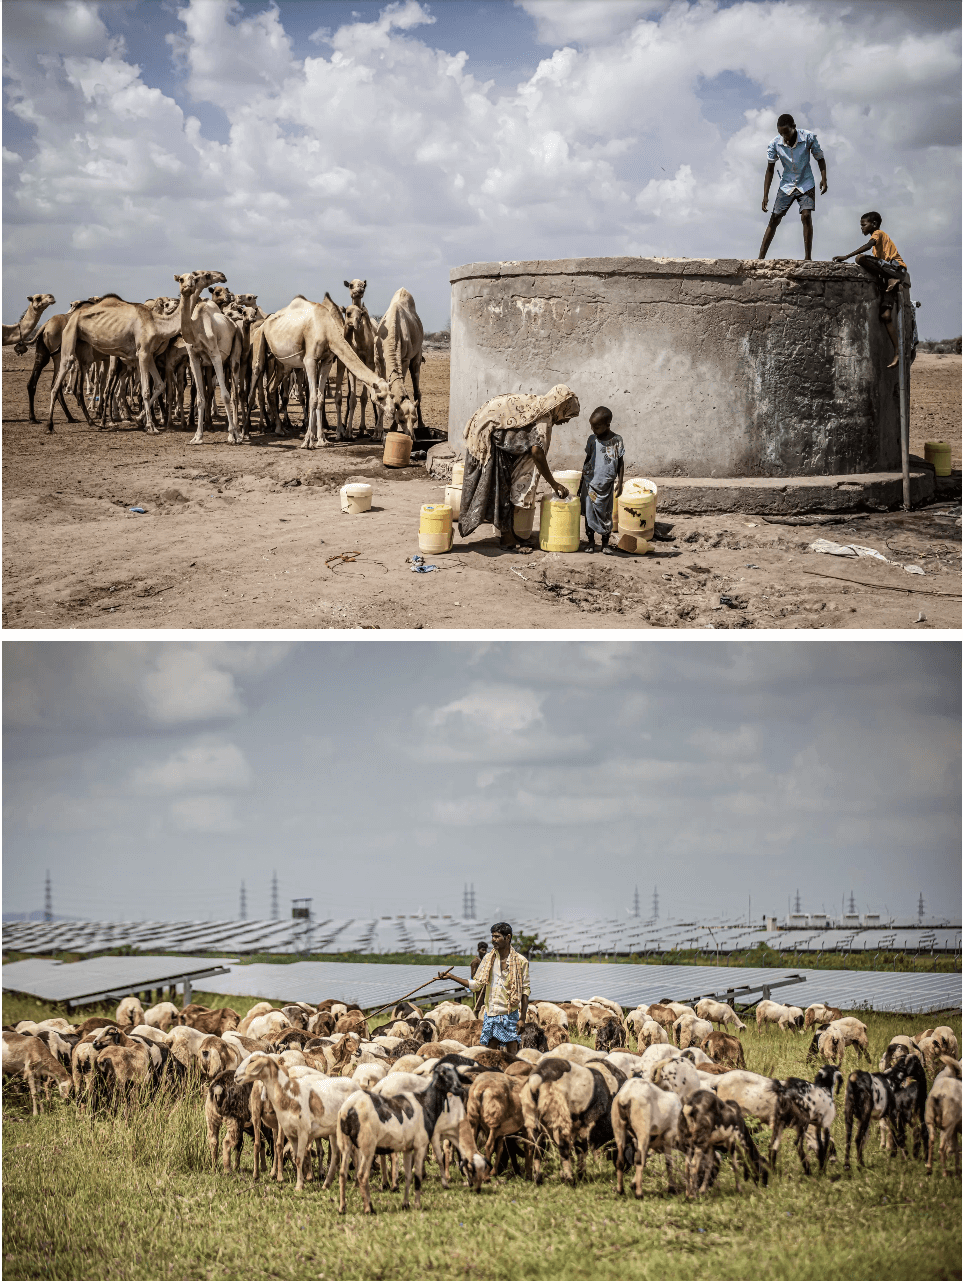 (Ảnh trên) Những con lạc đà yếu ớt vì thiếu ăn đứng sau một giếng nước mặn khi chúng di cư để tìm thức ăn gần Mochesa ở Nairobi, Kenya, vào ngày 09/12/2021. (Ảnh dưới) Những người chăn cừu trông chừng đàn cừu của họ trong một công viên ở làng Kyataganacharulu, Karnataka, Ấn Độ, vào ngày 11/10/2021. (Ảnh: Ed Ram/Getty Images, Abhishek Chinnappa/Getty Images)